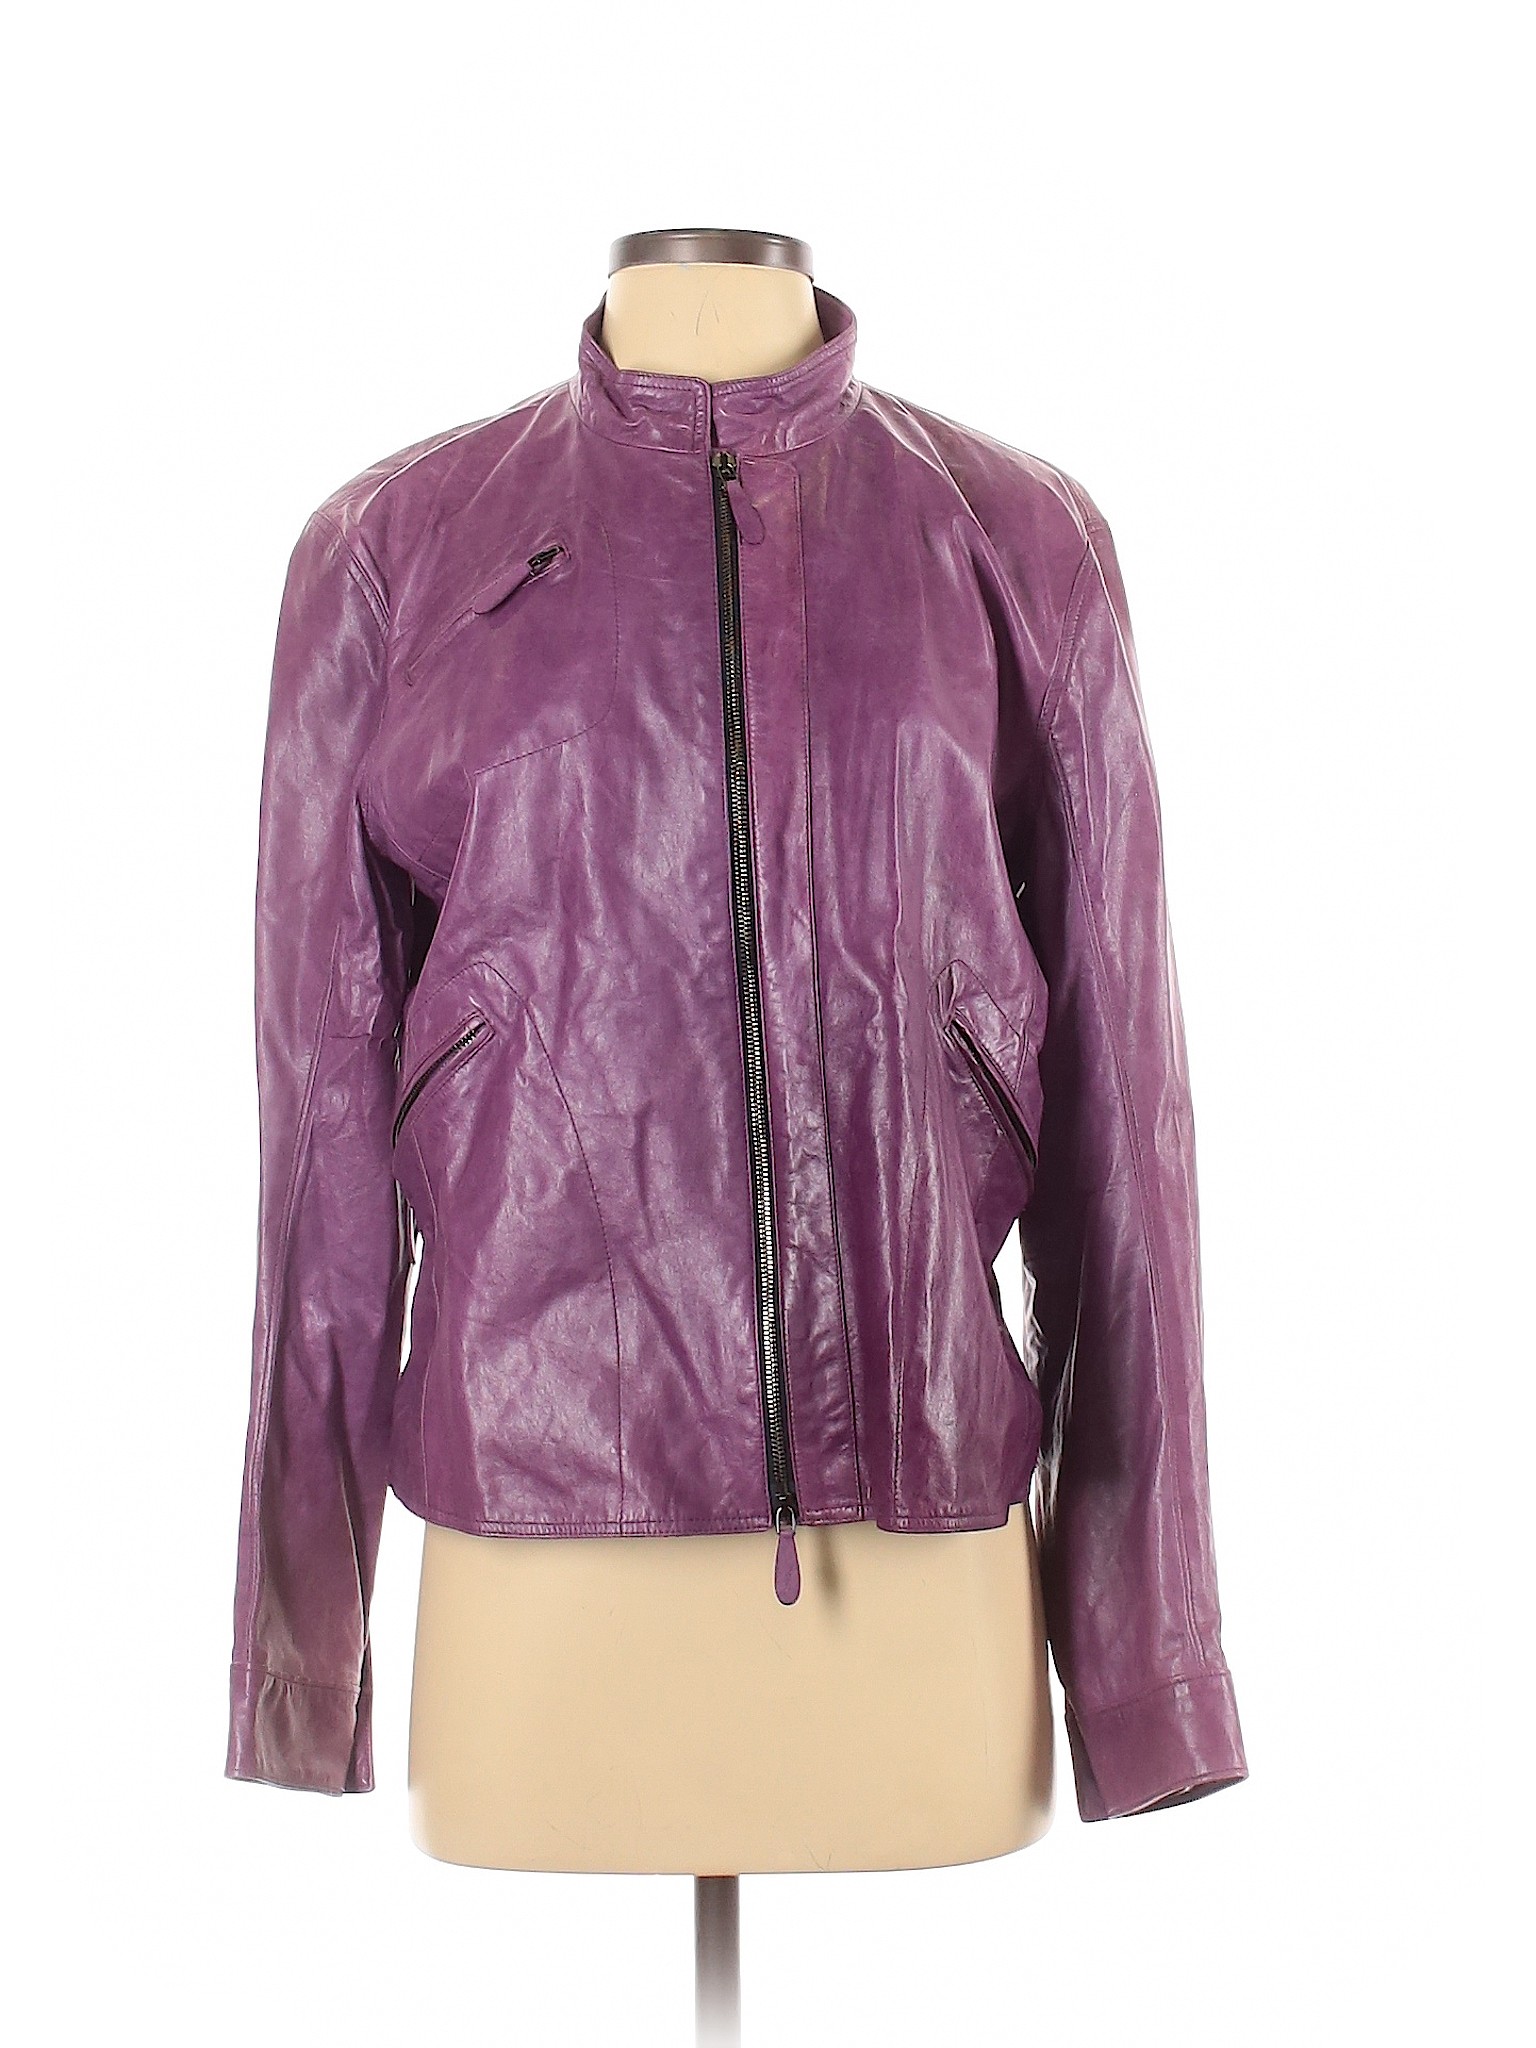 Jil Sander Women Purple Leather Jacket 36 eur | eBay